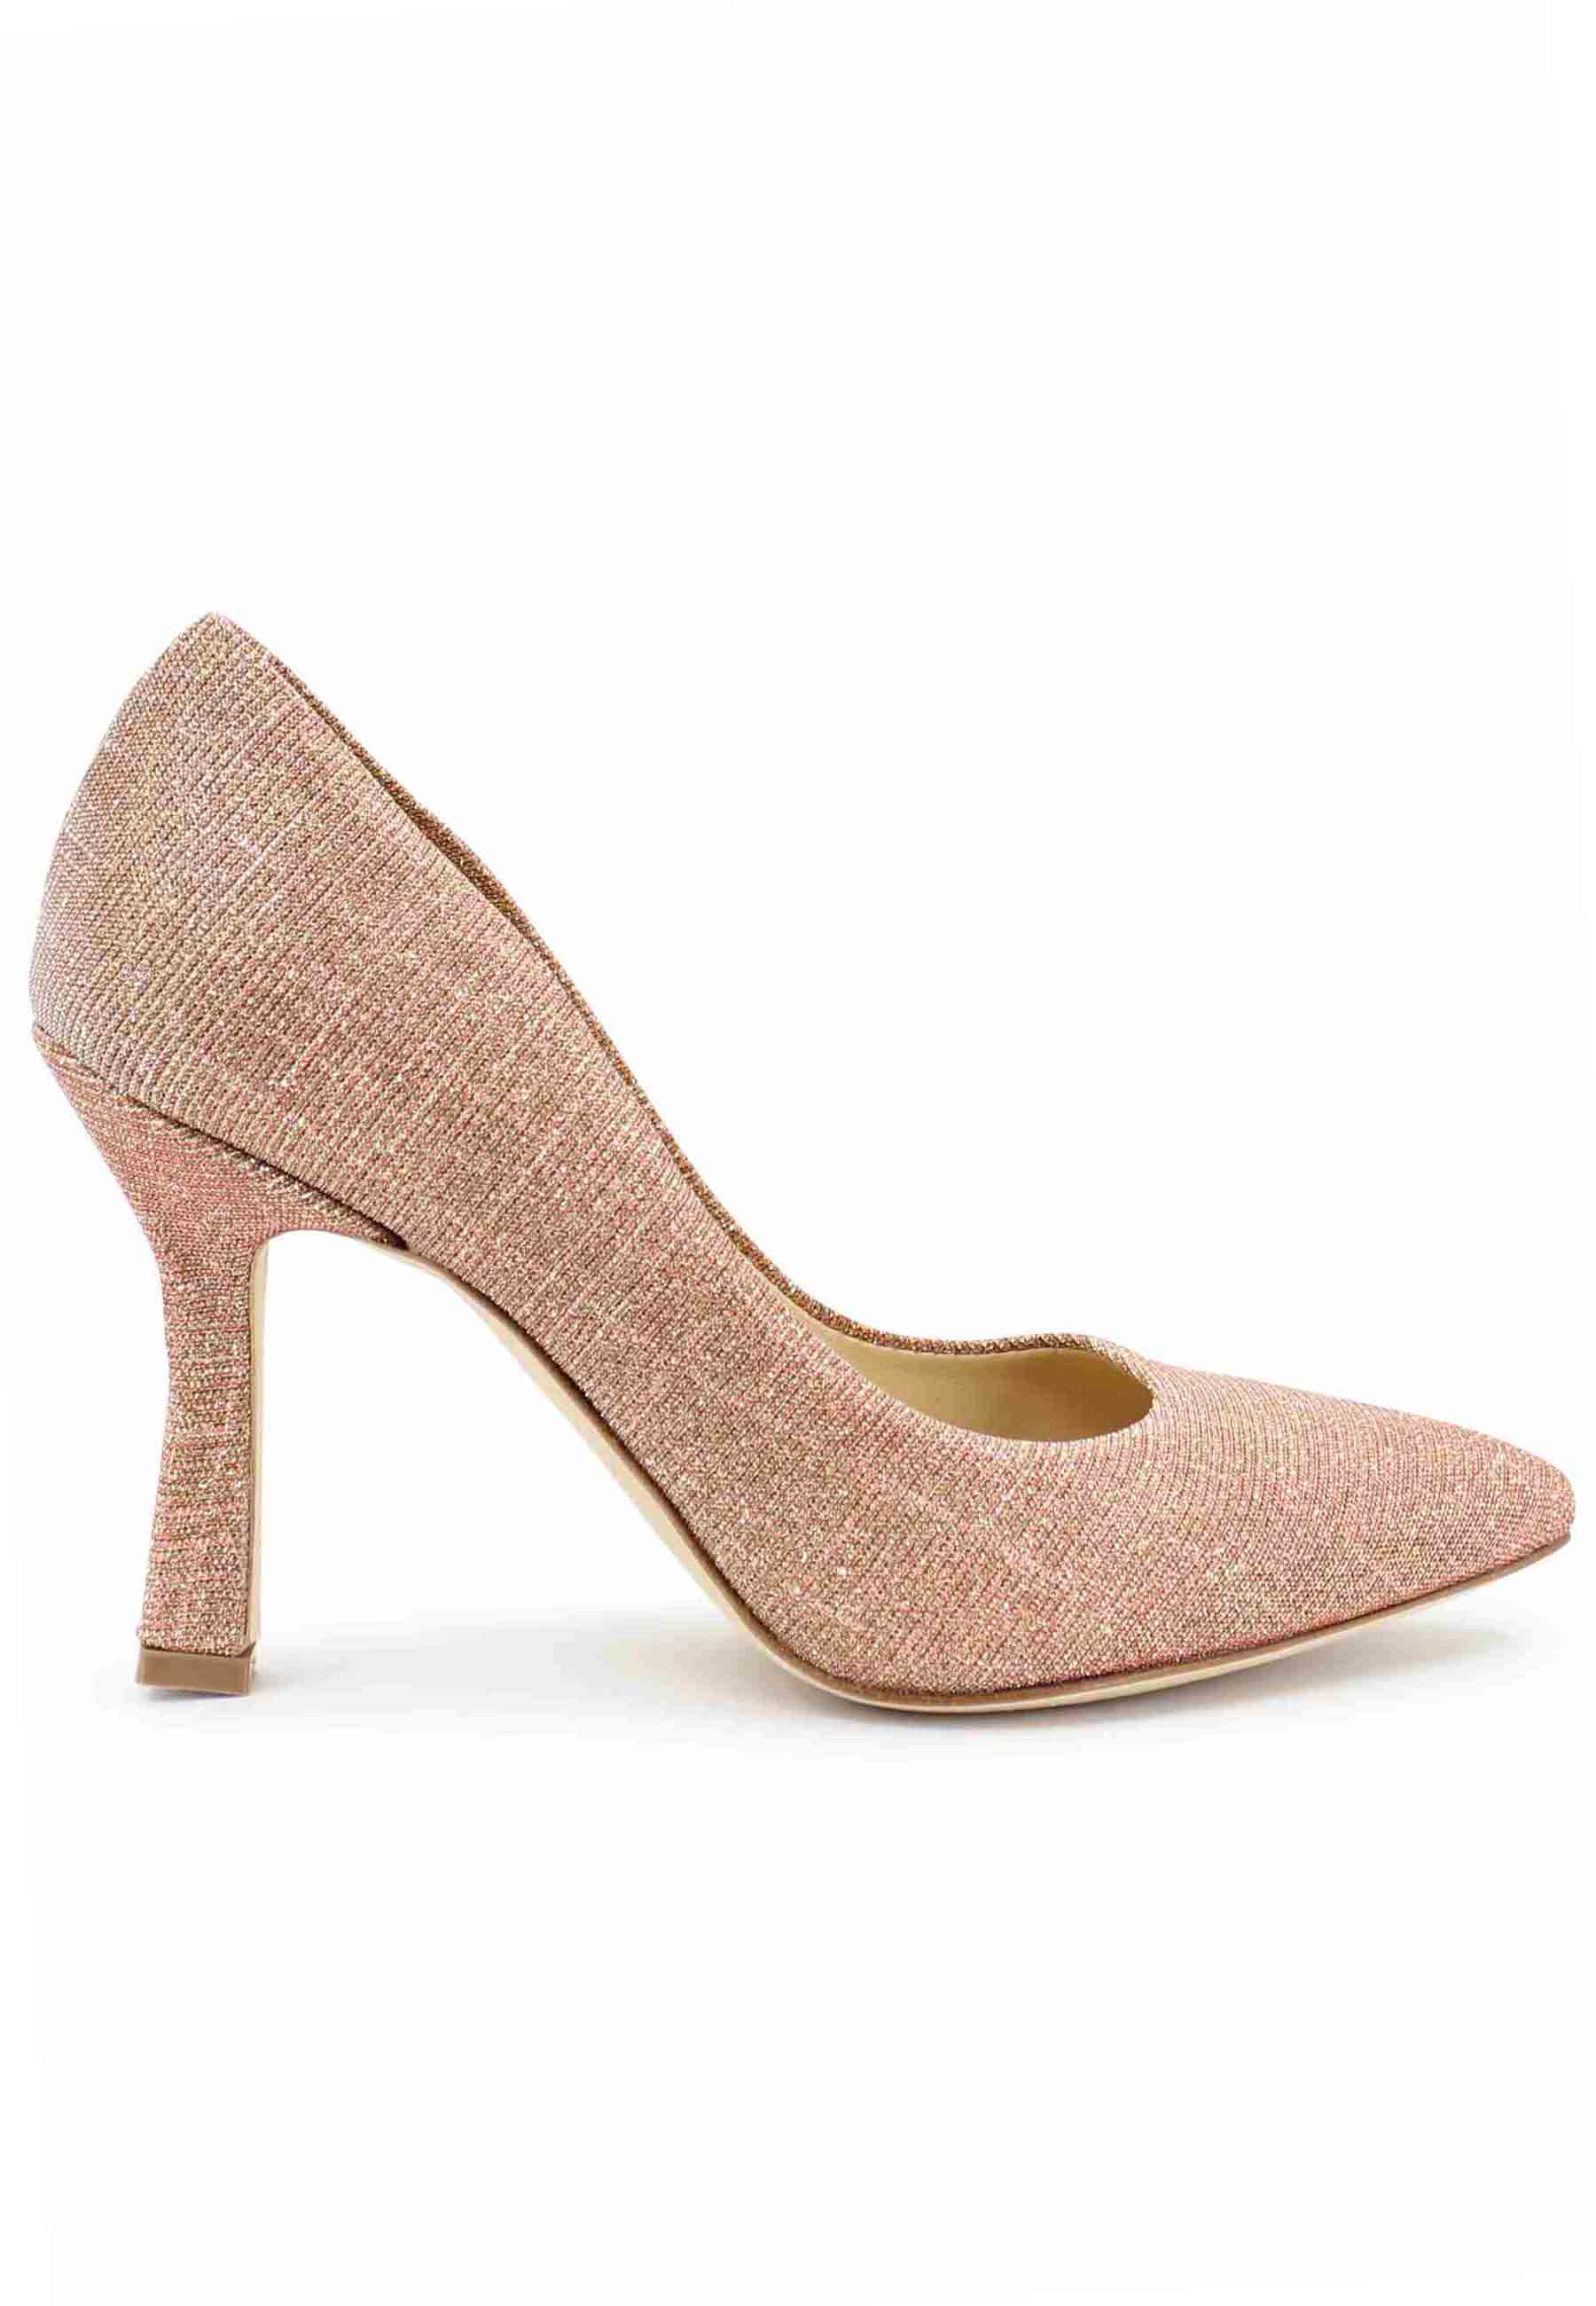 DE1002/RT women's pumps in peach lux fabric with high heel